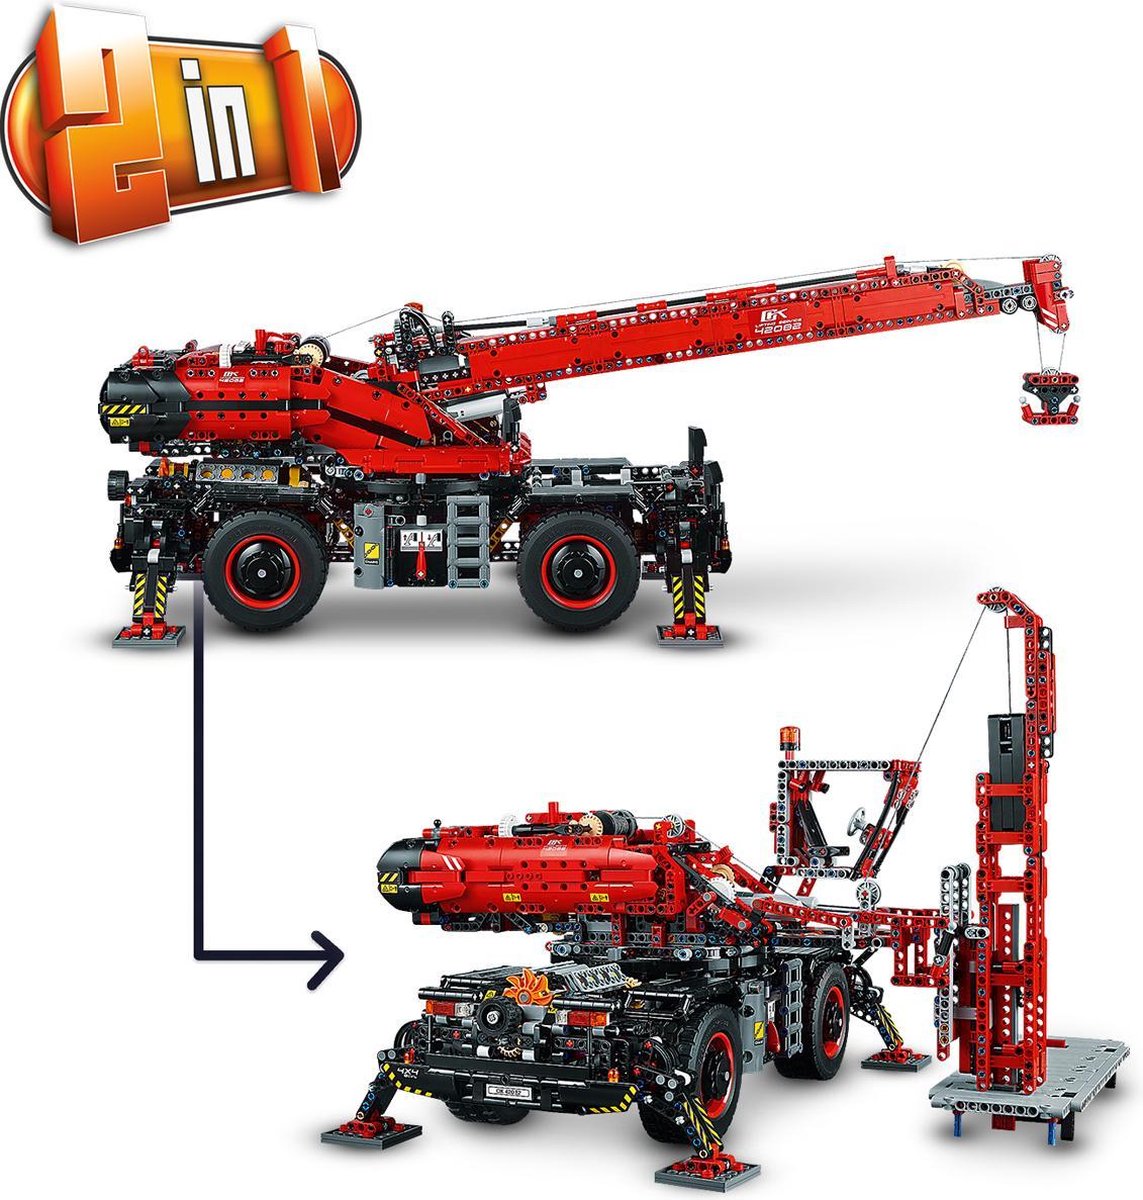 LEGO Technic Kraan voor alle Terreinen - 42082 | bol.com